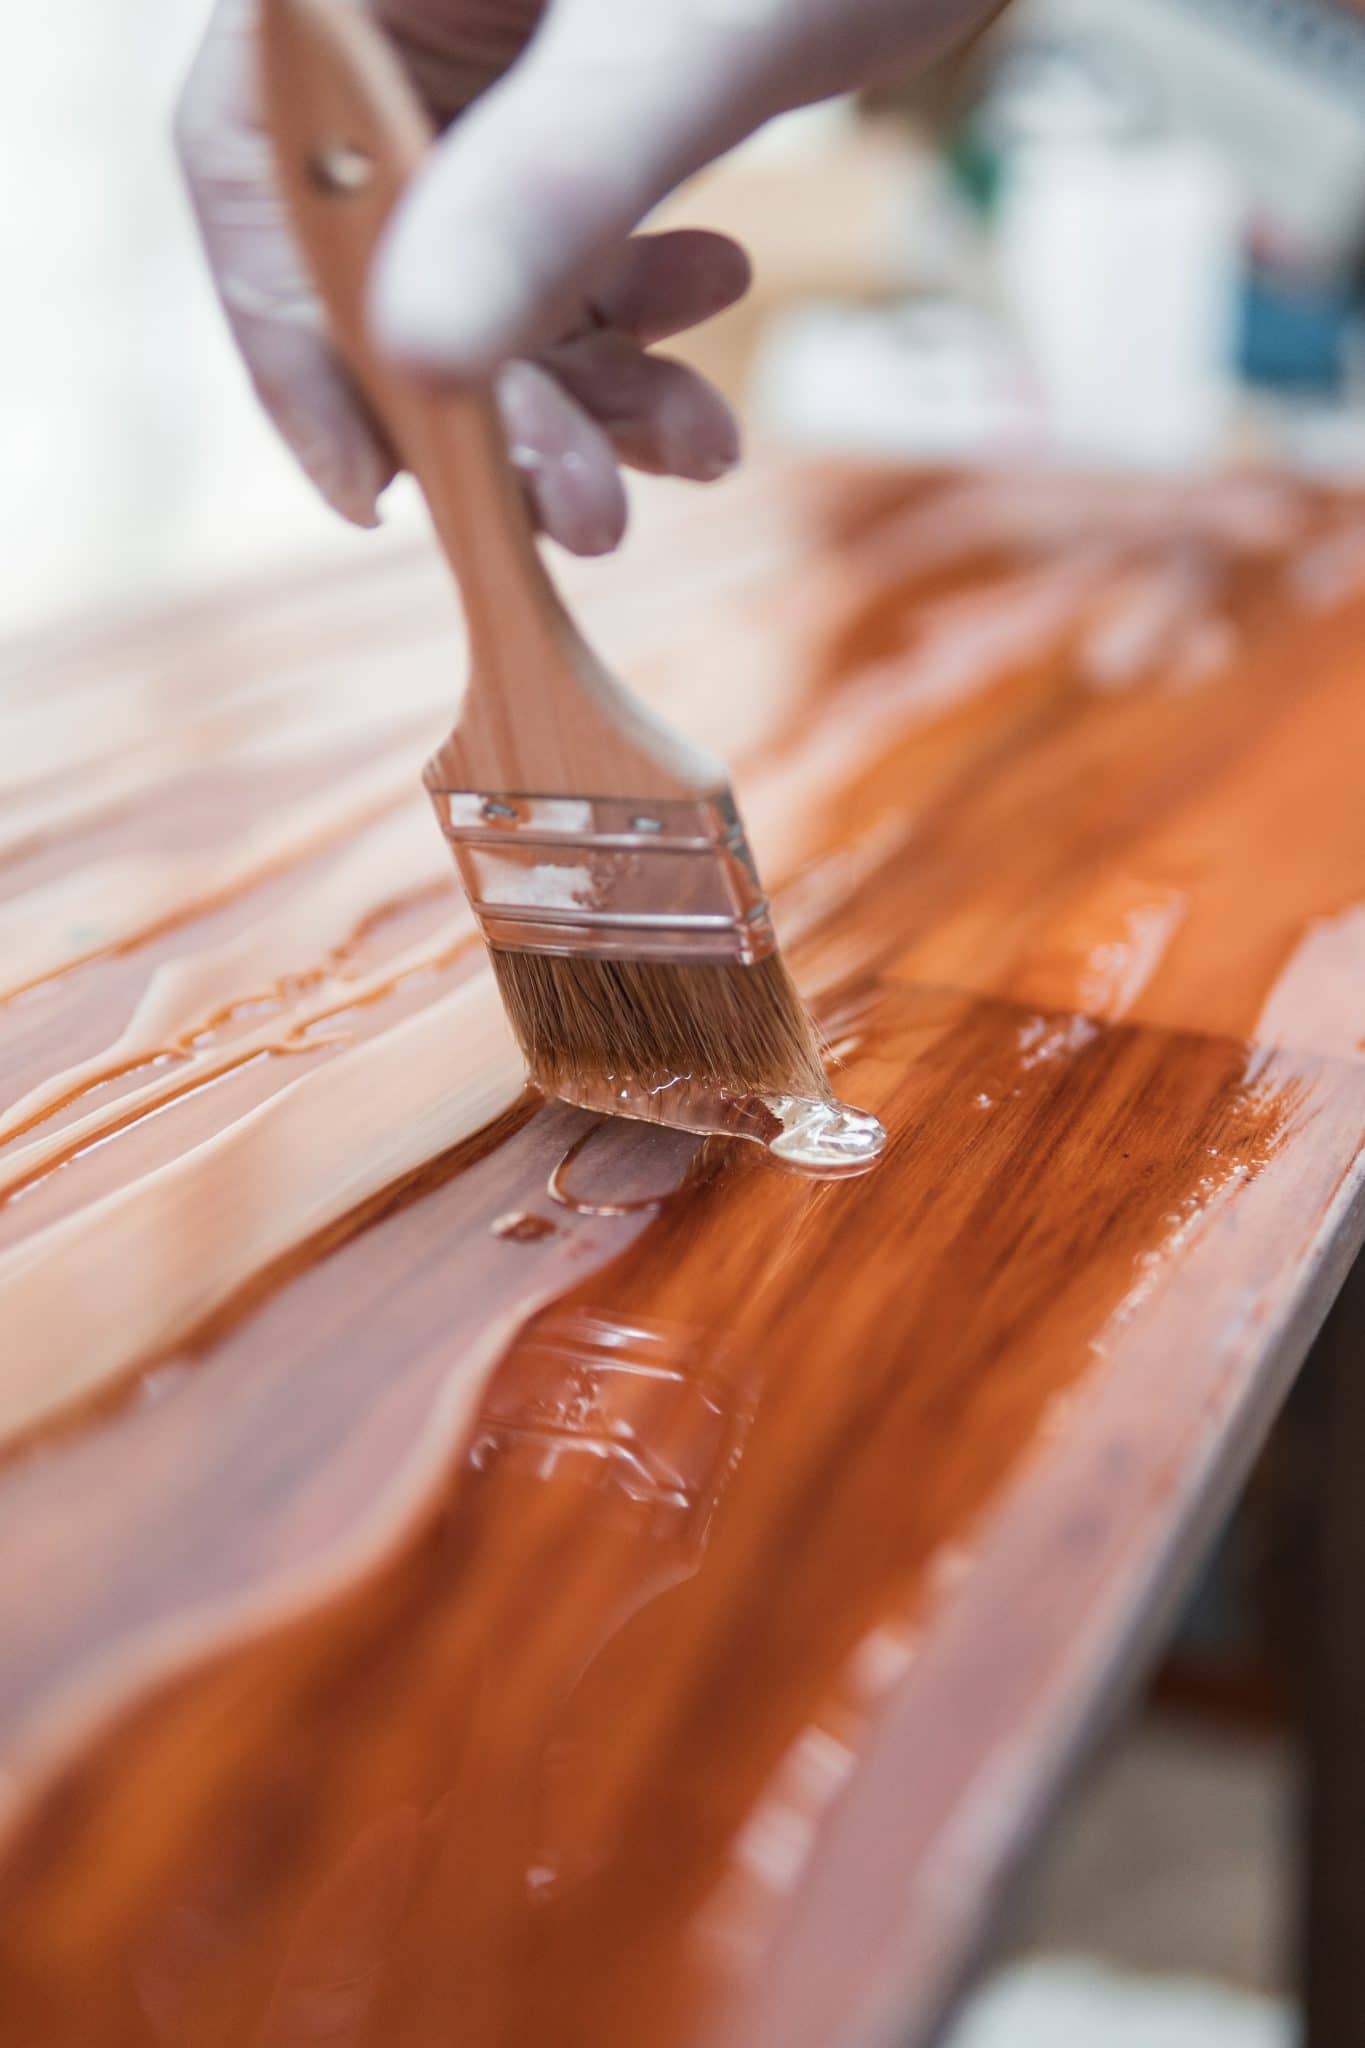 Quelle peinture pour peindre un meuble en bois ?